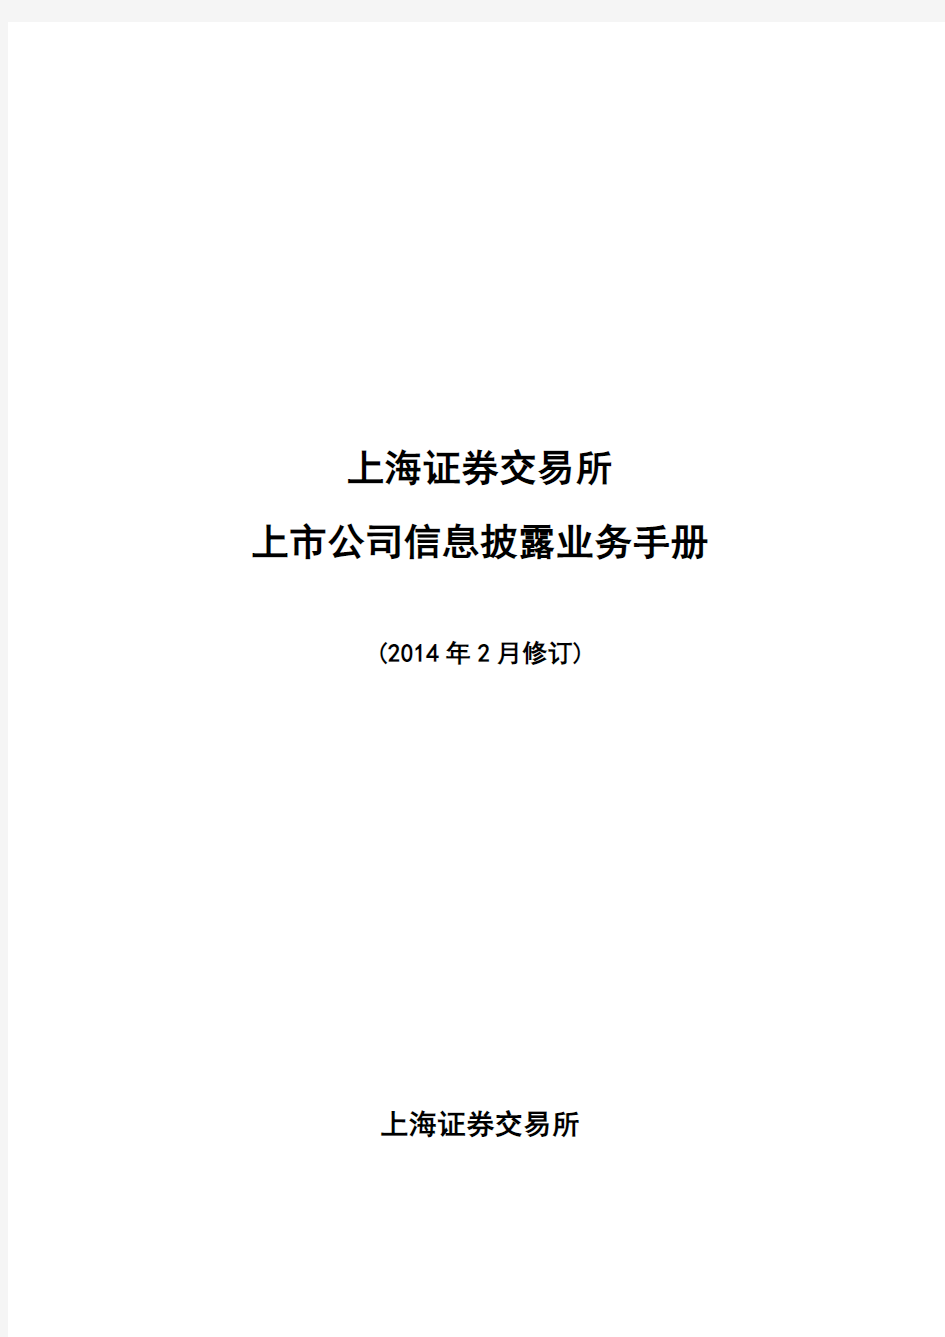 上海证券交易所上市公司信息披露业务手册(2014年2月修订).介绍